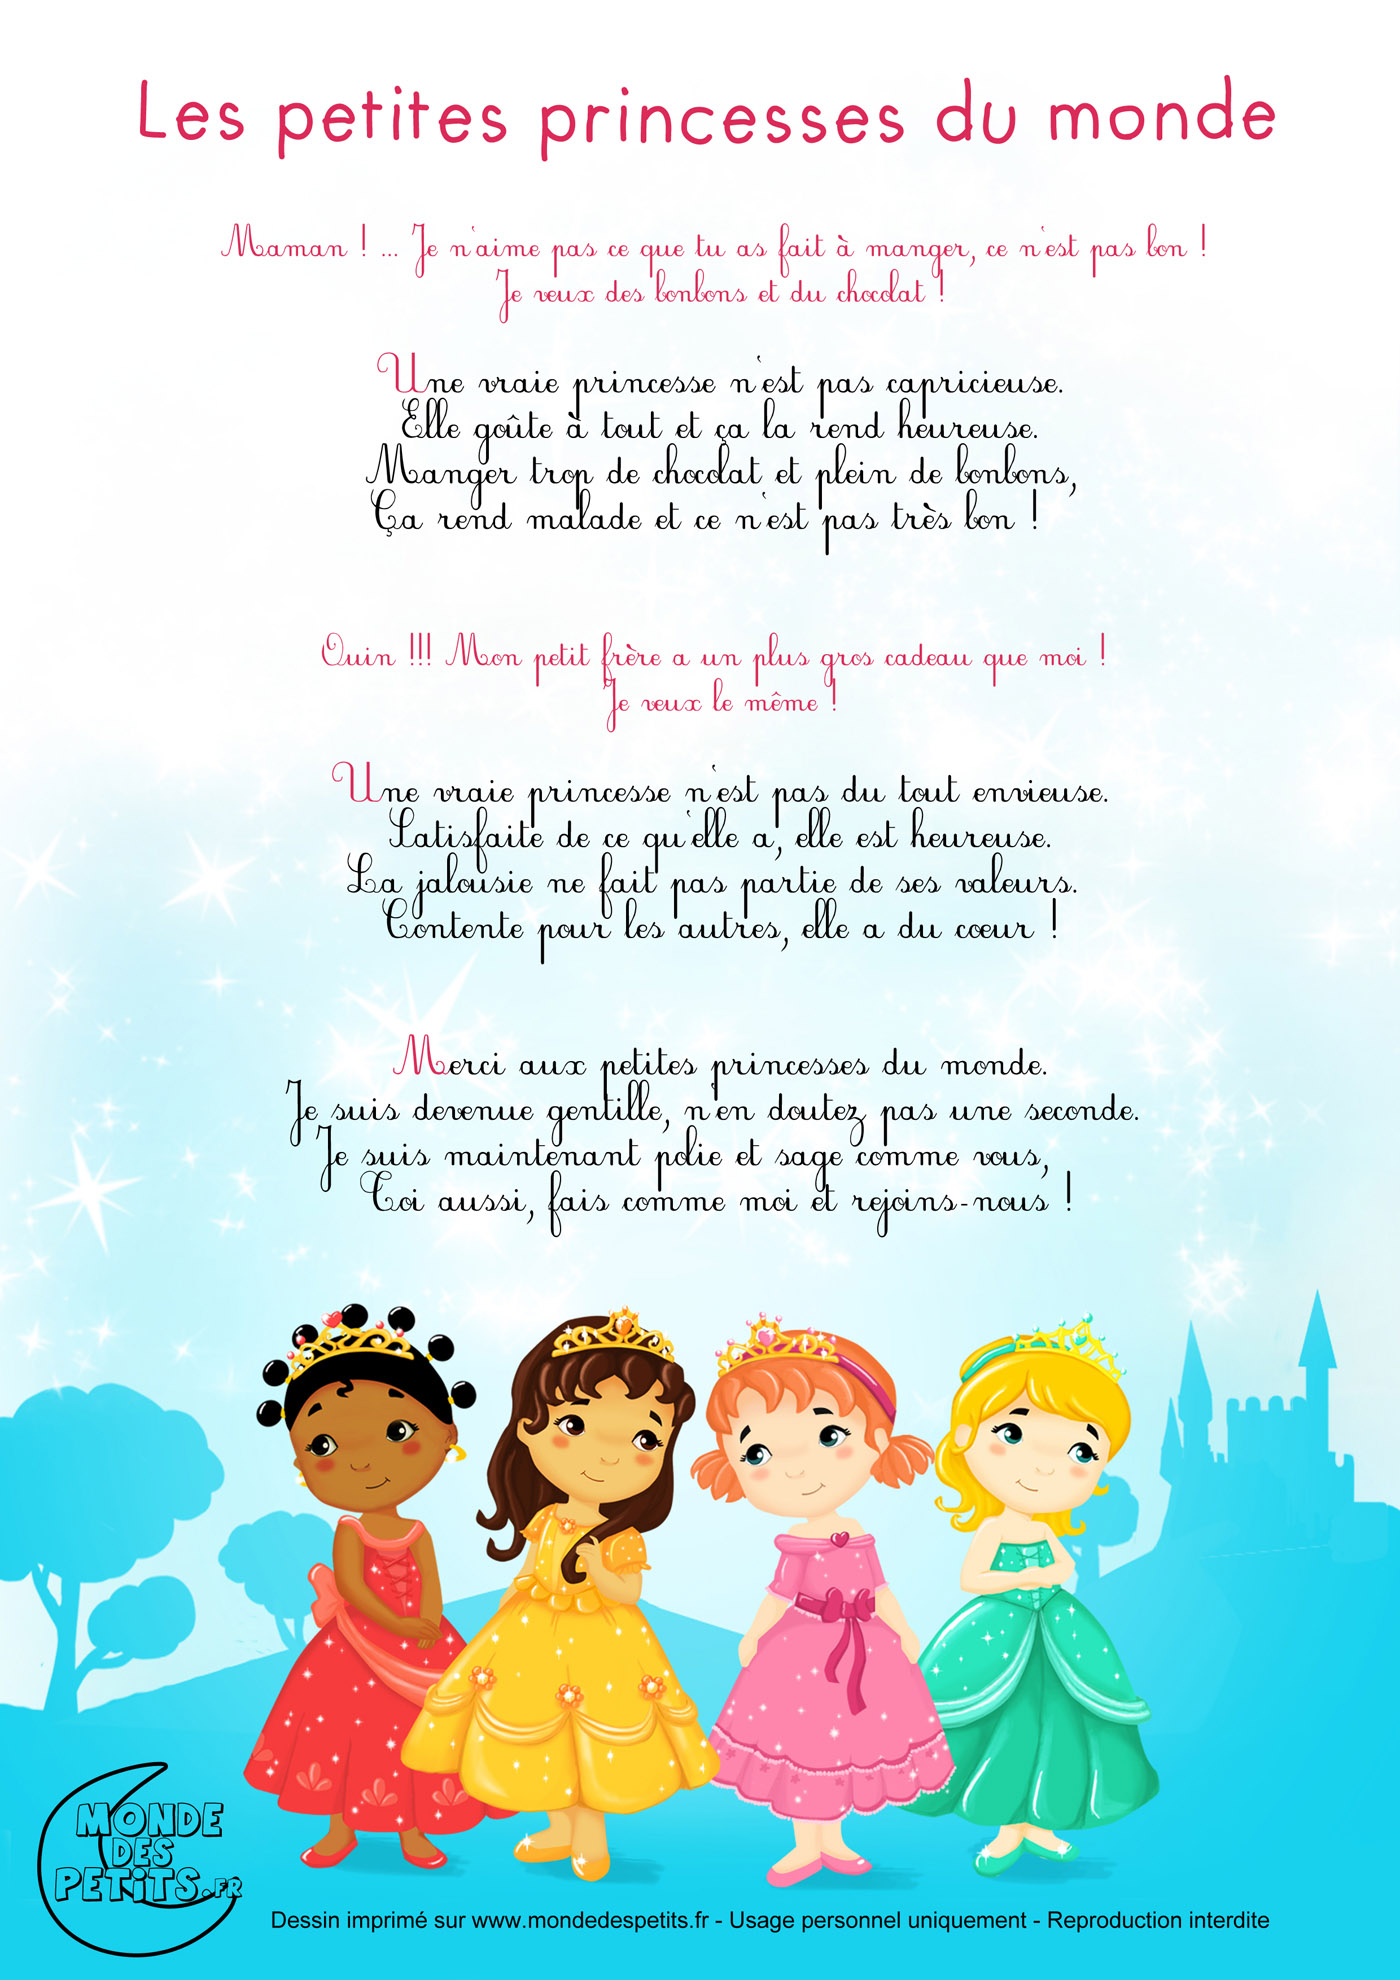 Monde des petits - Les petites princesses du monde, chanson pour enfants